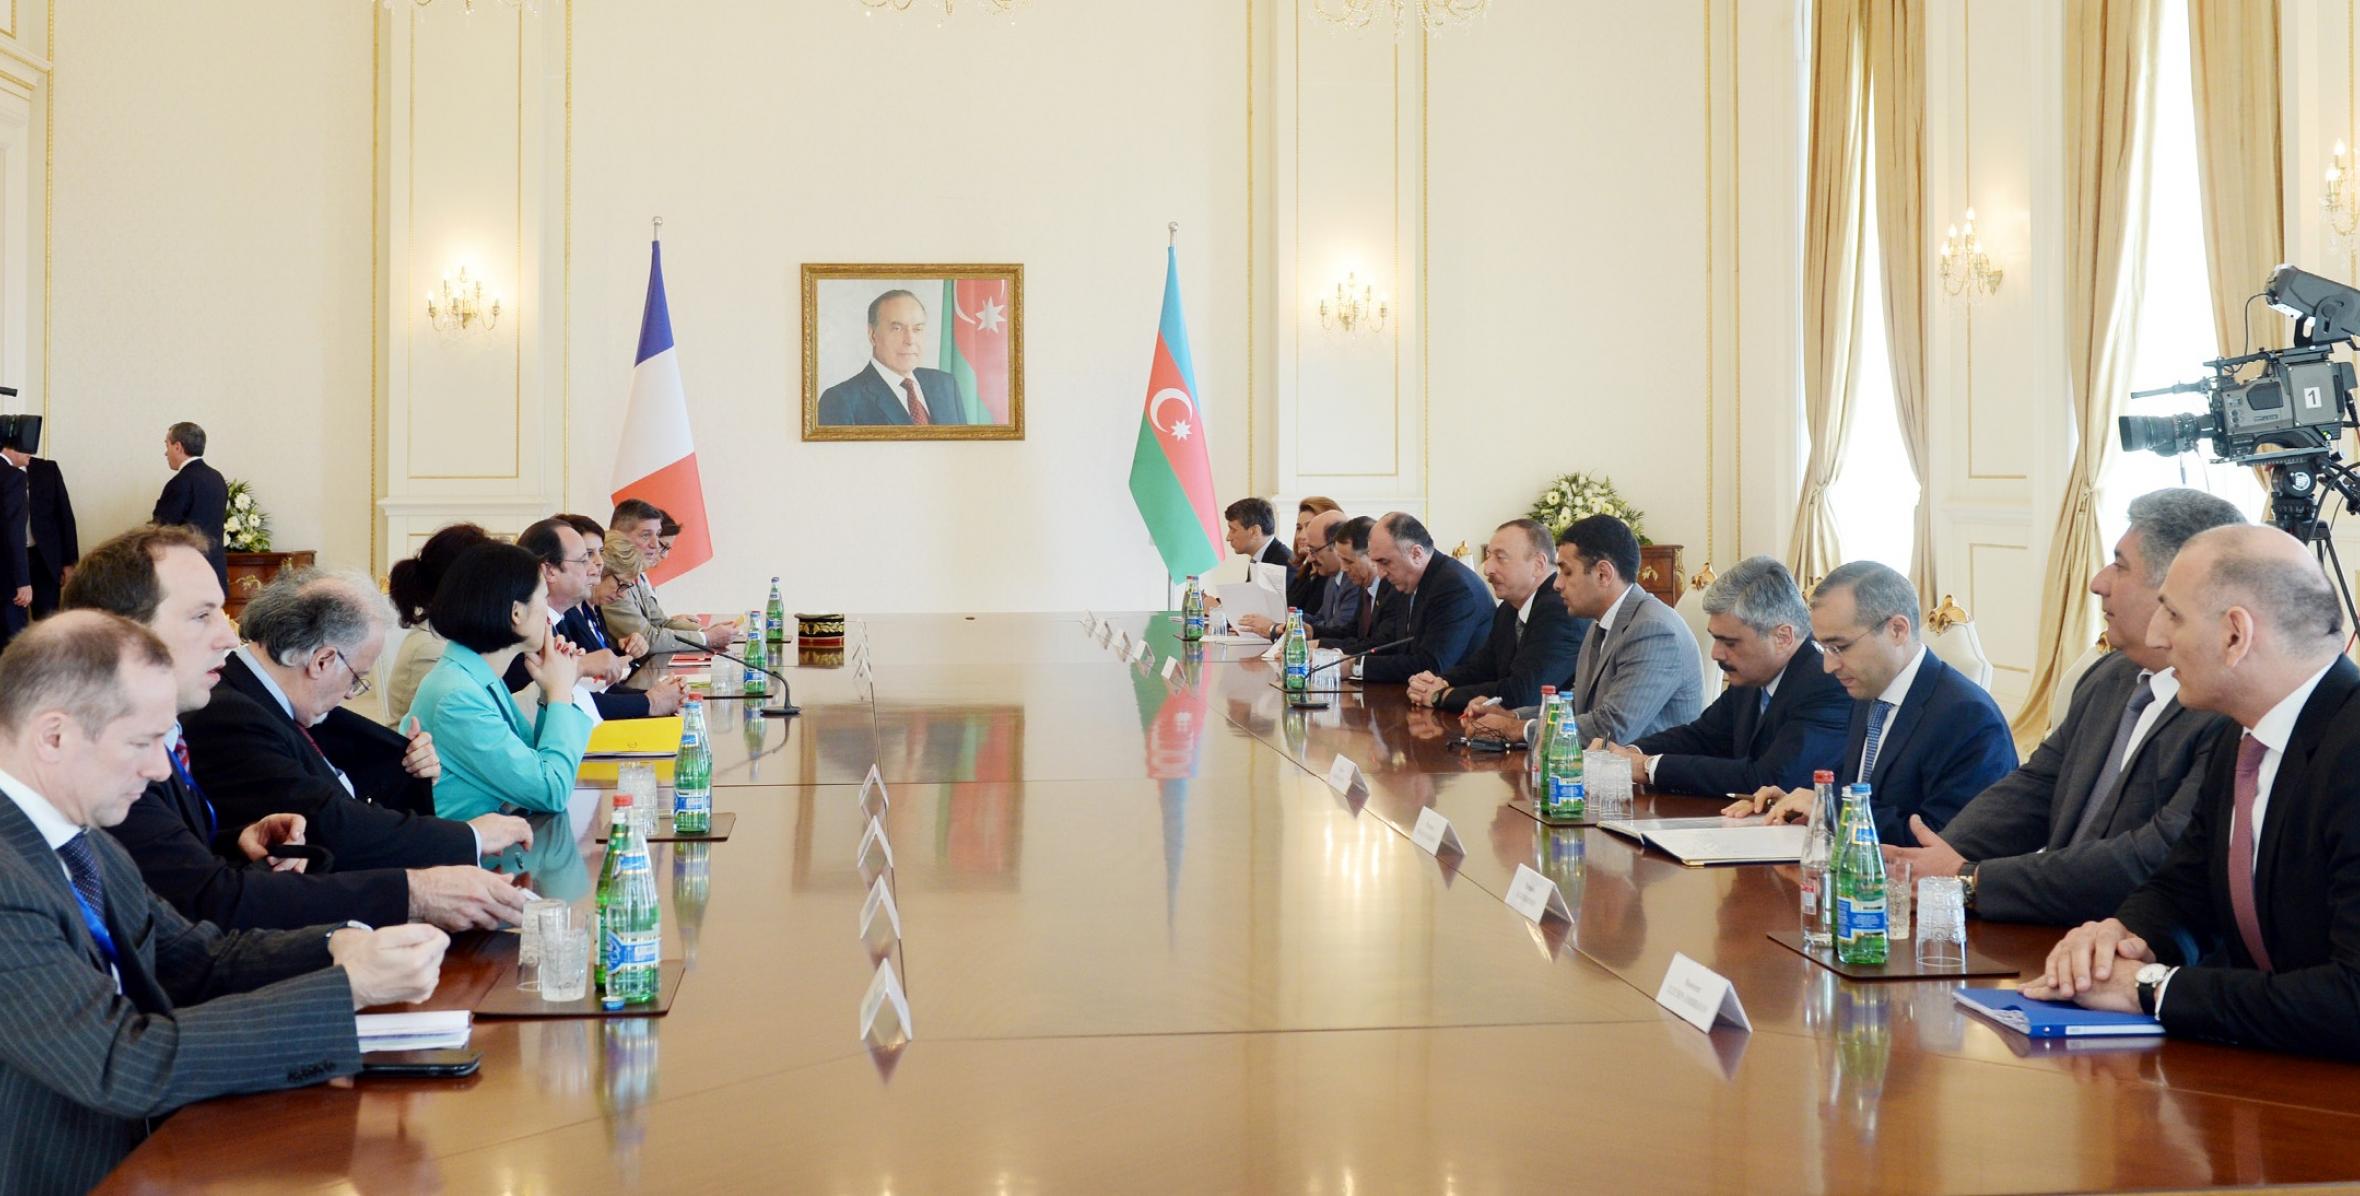 Состоялась встреча президентов Азербайджана и Франции в расширенном составе